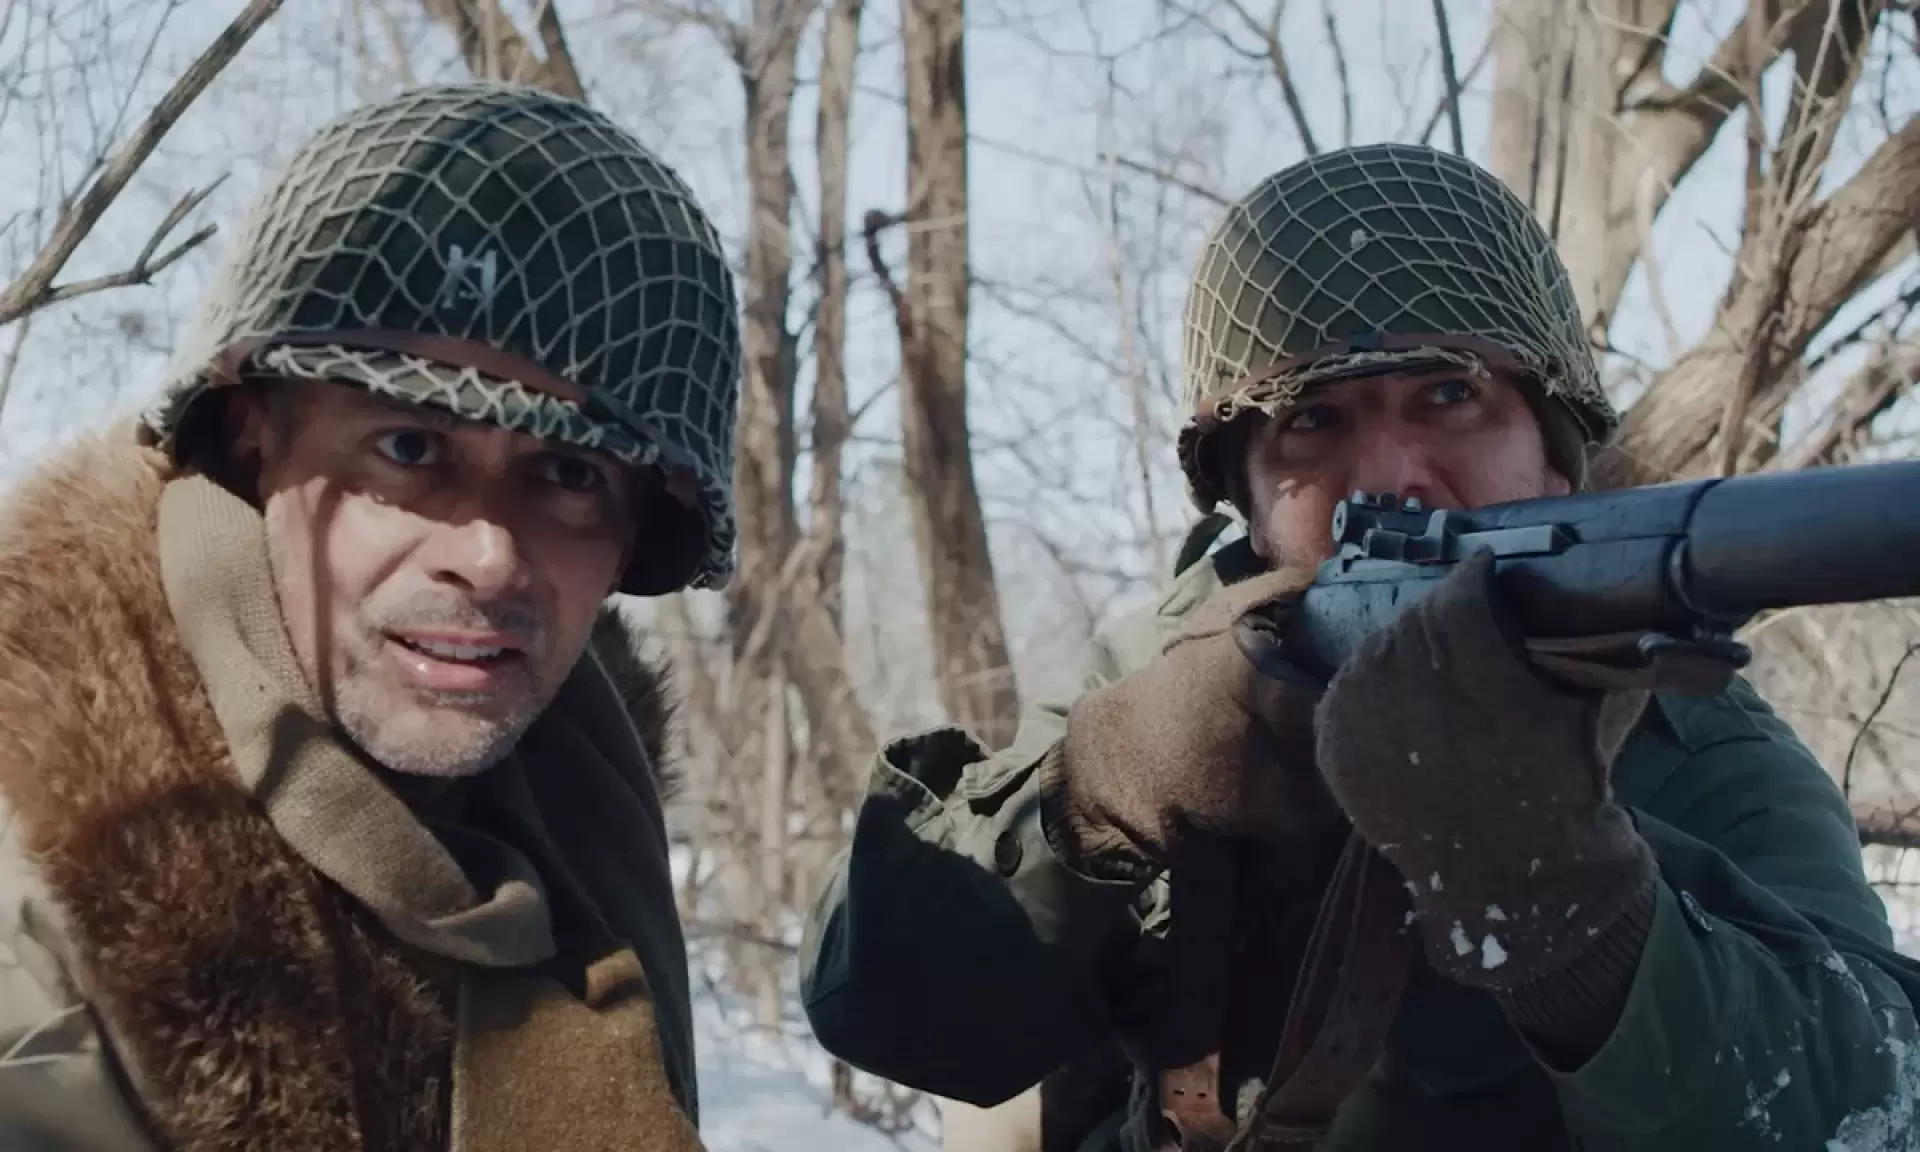 دانلود فیلم Battle of the Bulge: Winter War 2020 (نبرد بولج جنگ زمستان)